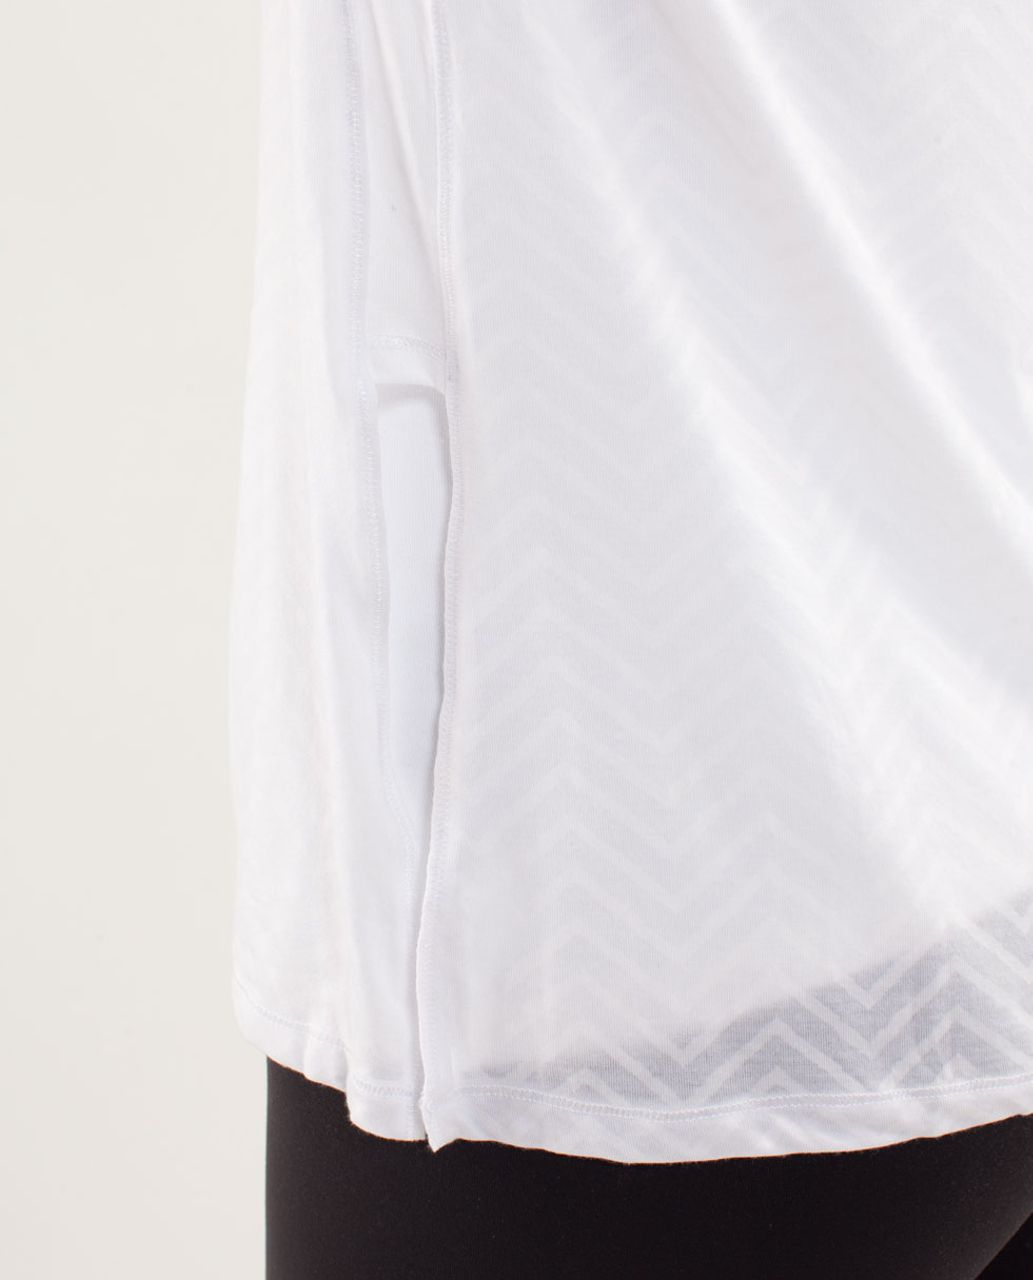 Lululemon Presence Of Mind Long Sleeve - Textured Chevron Burnout White